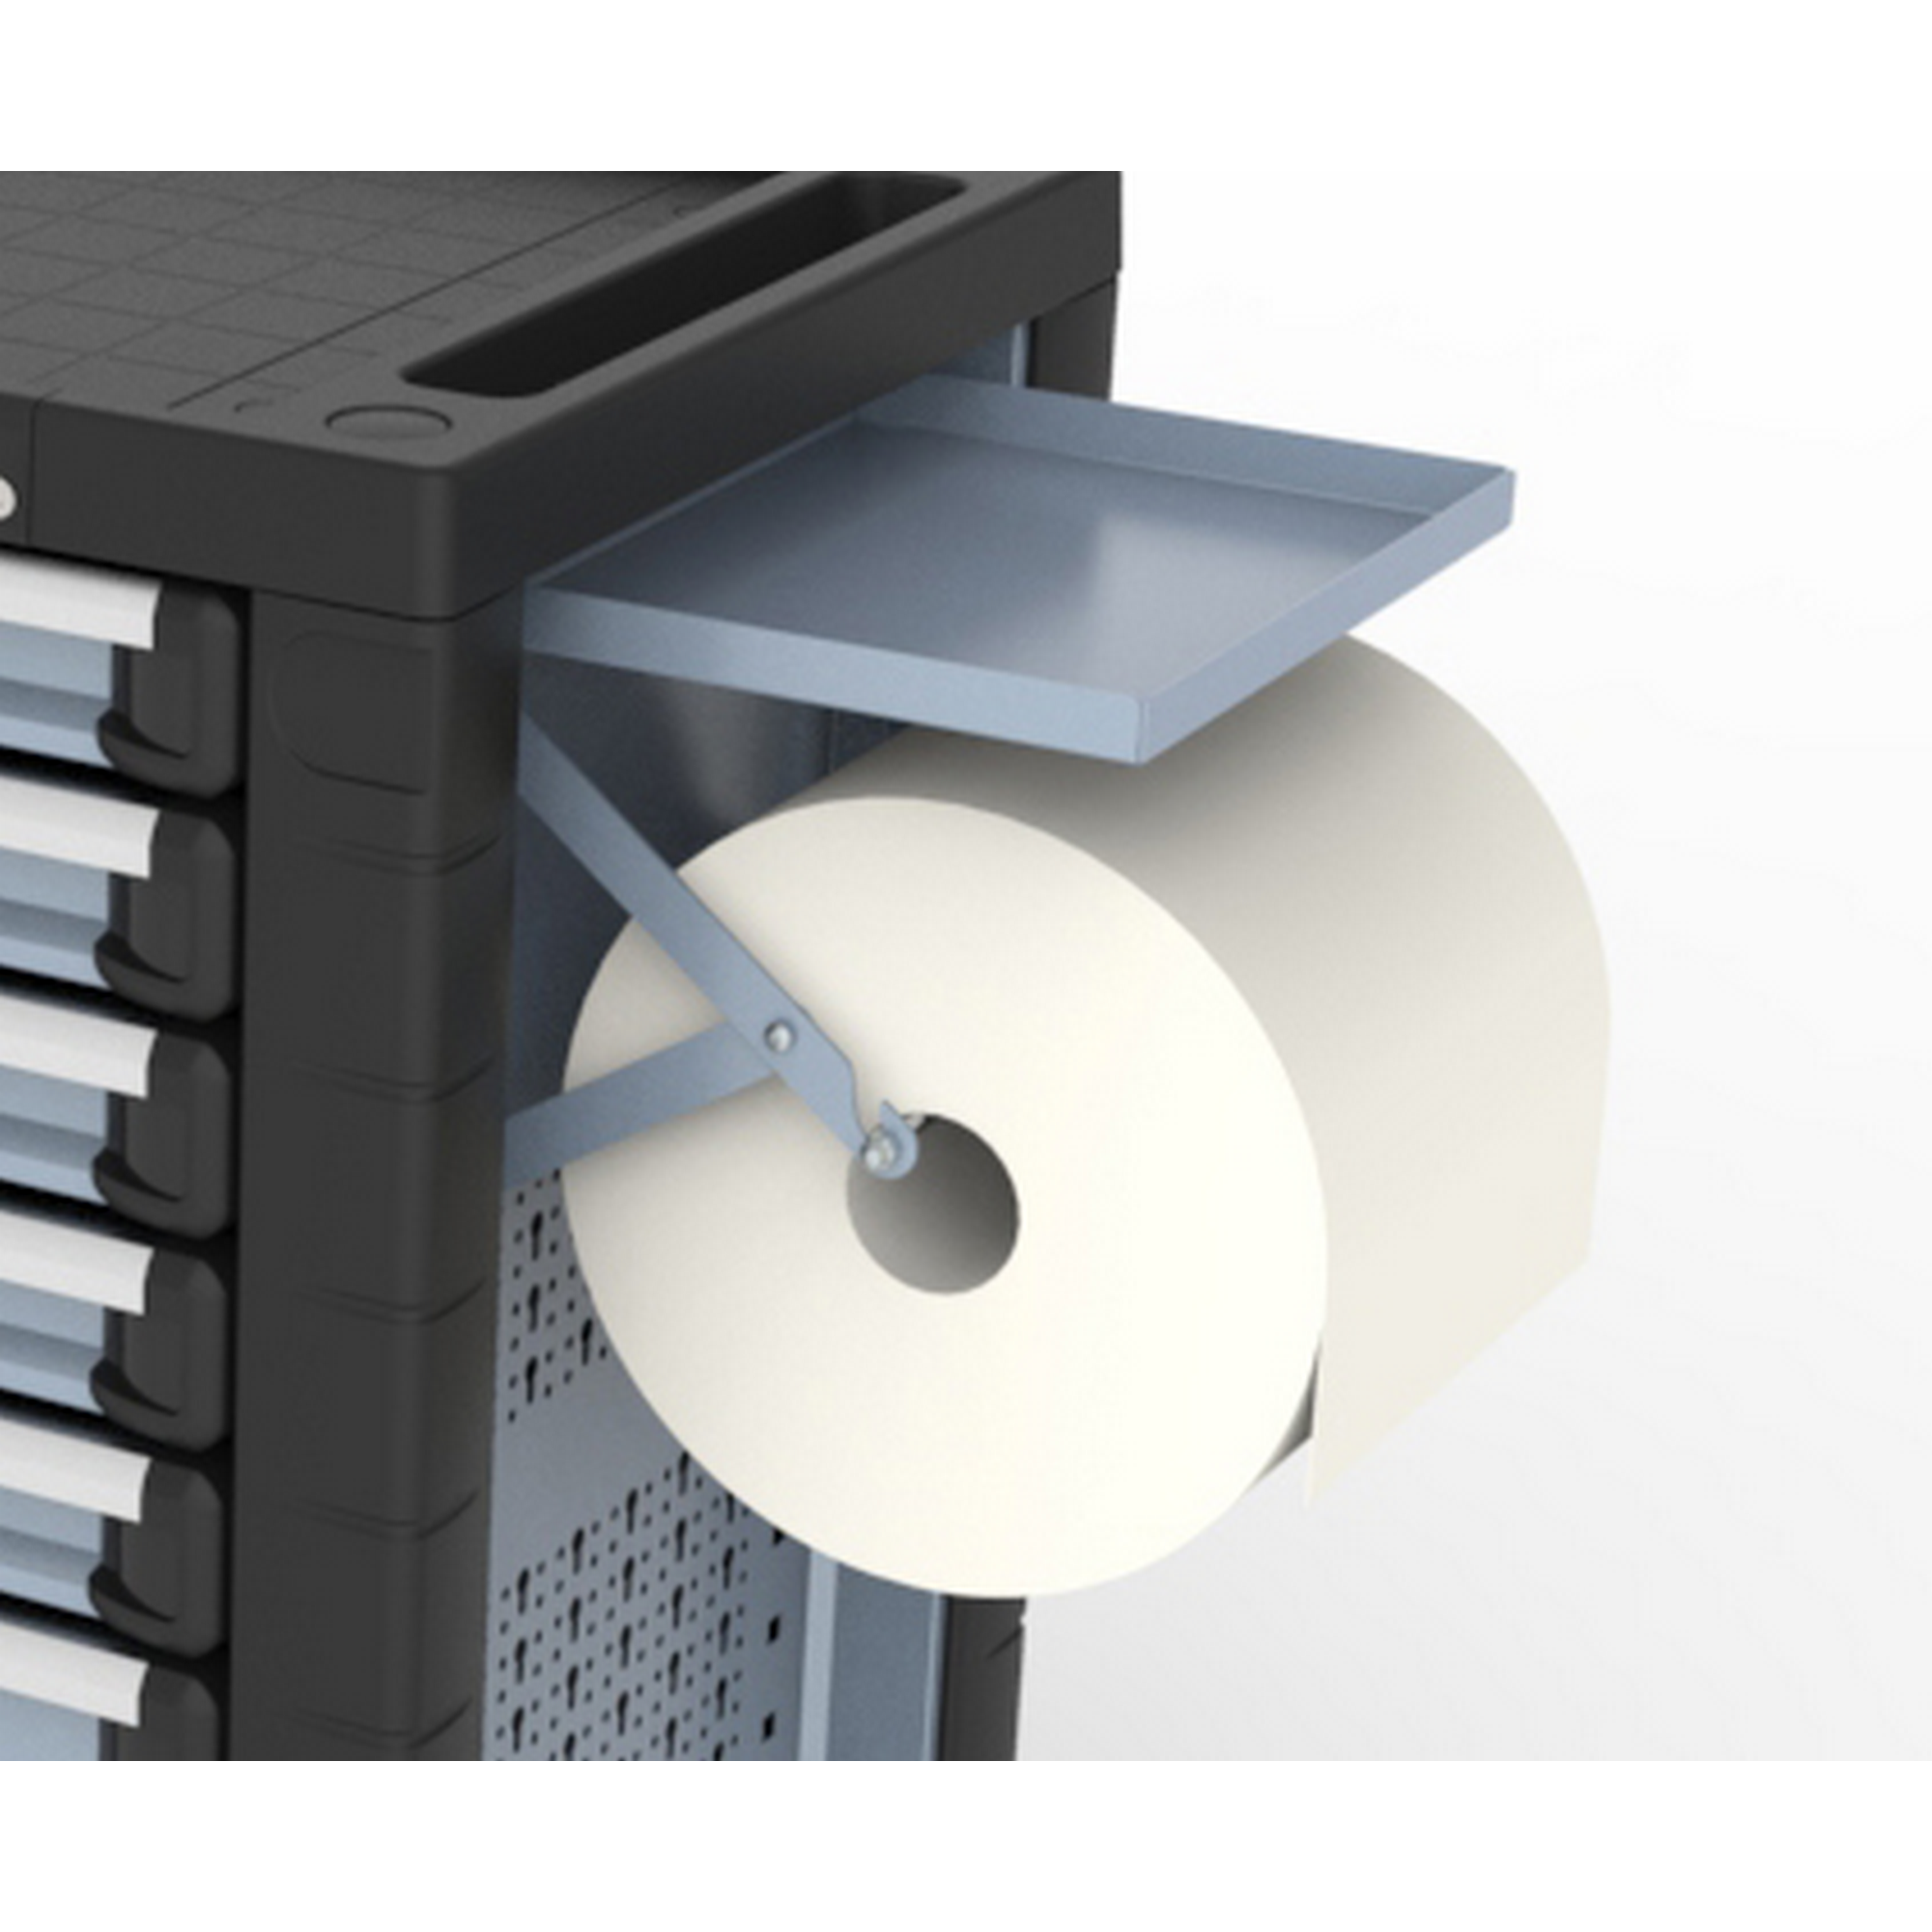 Papierrollenhalter mit Ablagefach aus Stahlblech + product picture